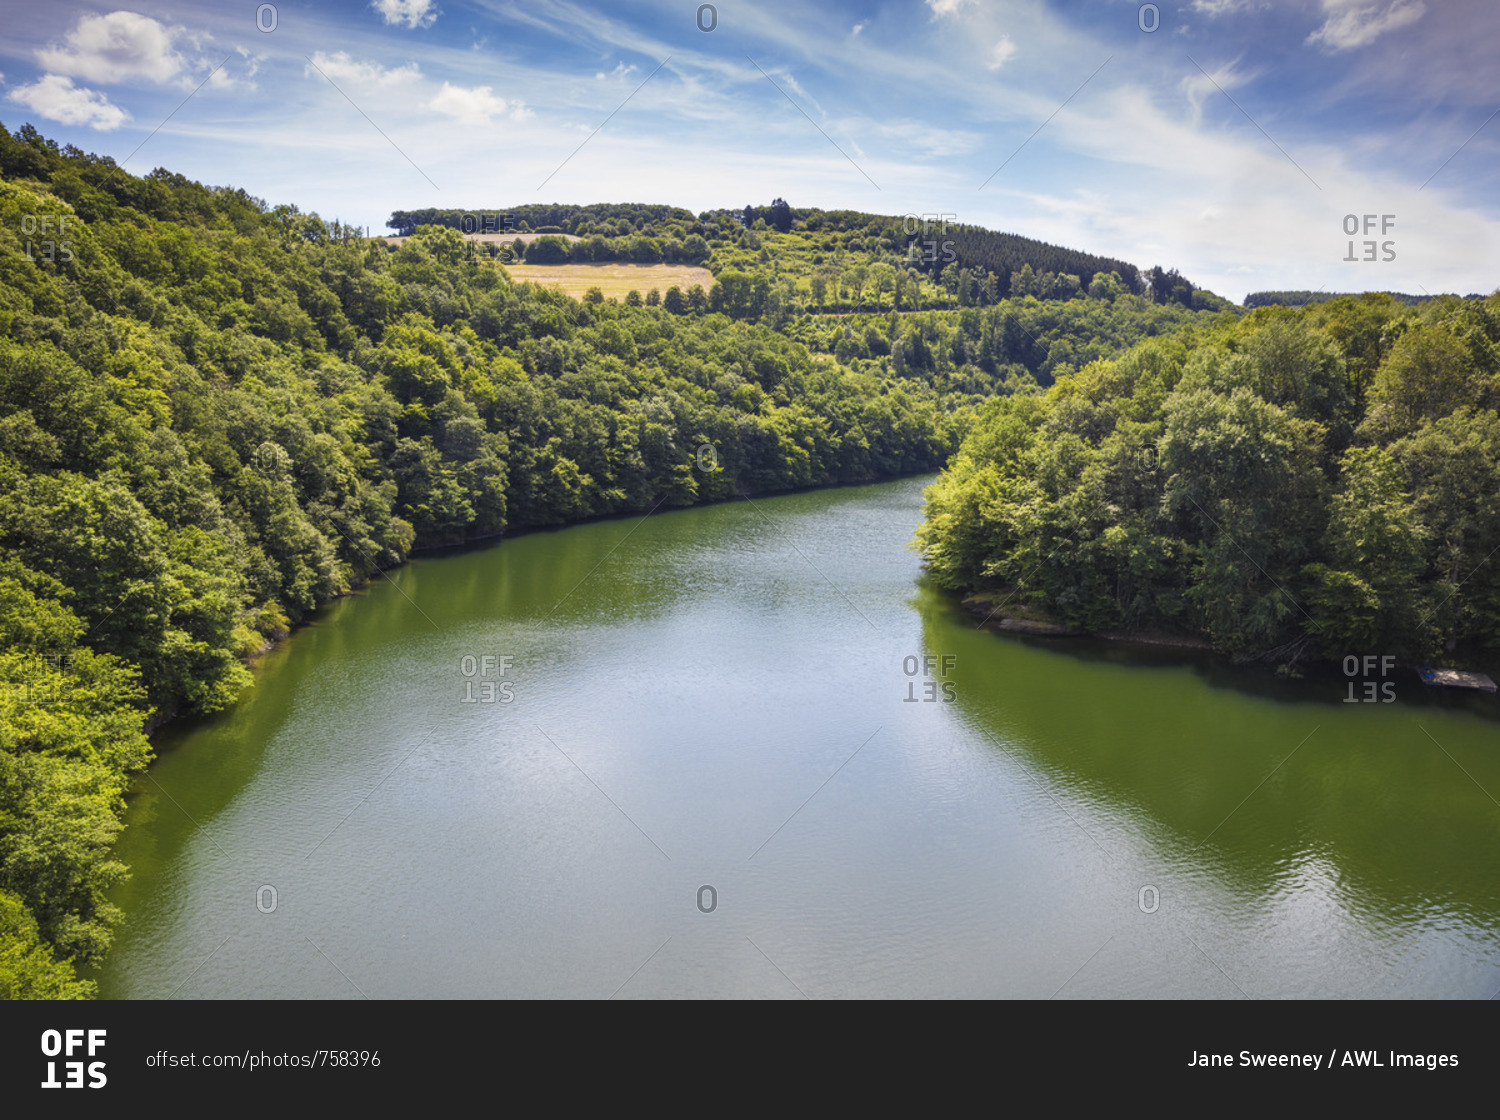 Luxembourg, Upper Sure nature park, Lultzhausen, Sure river